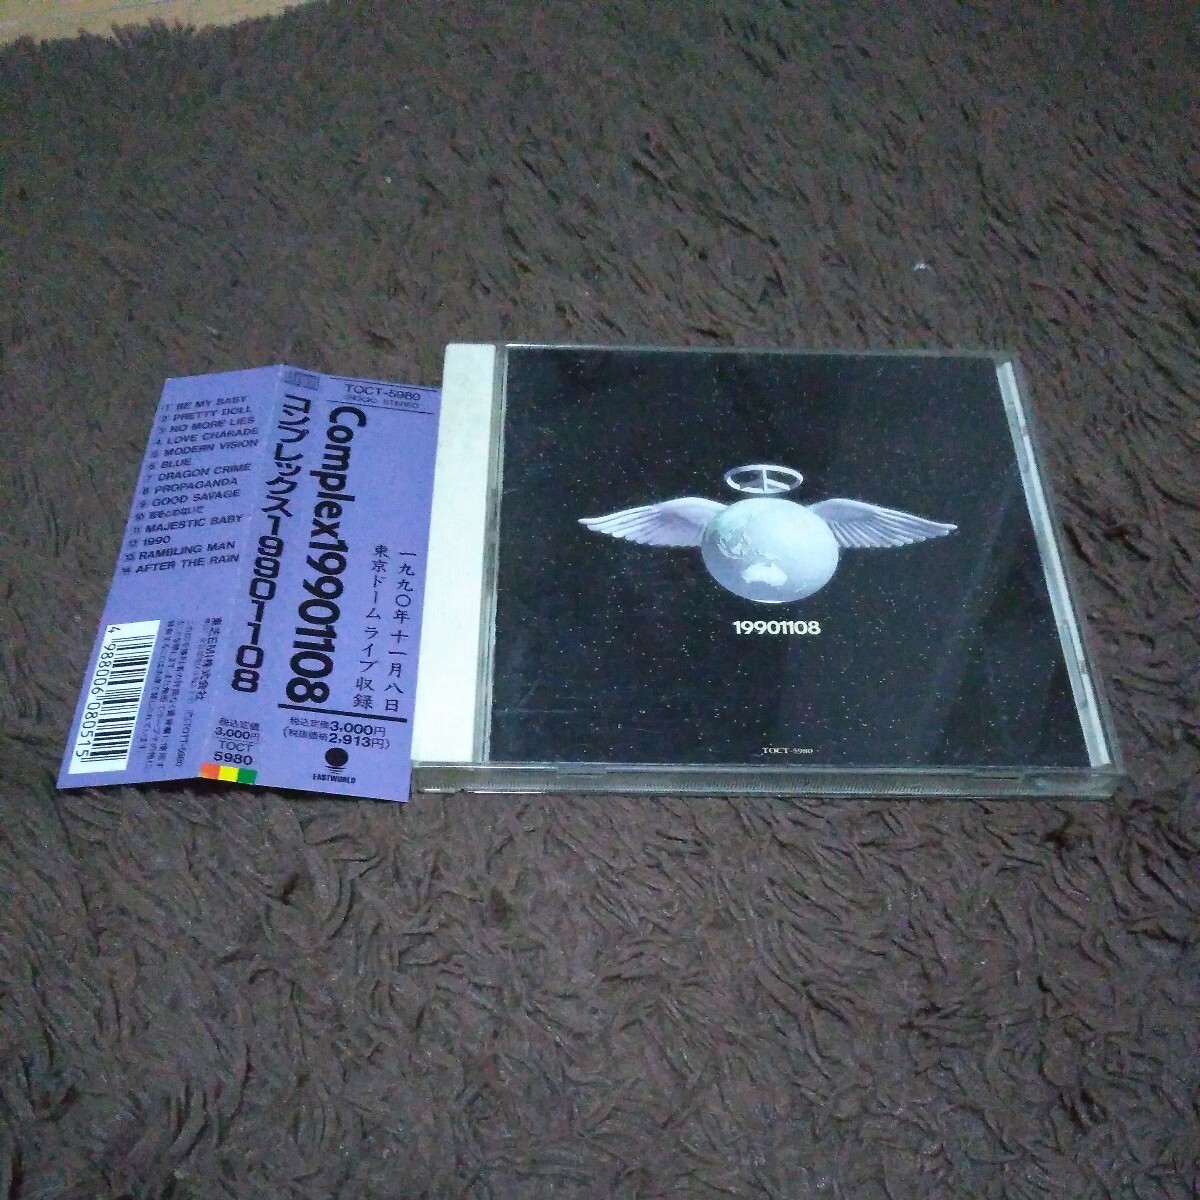 コンプレックス/complex/吉川 晃司/布袋 寅泰◆『19901108』帯付き CD レア 貴重 廃盤 名盤_画像1